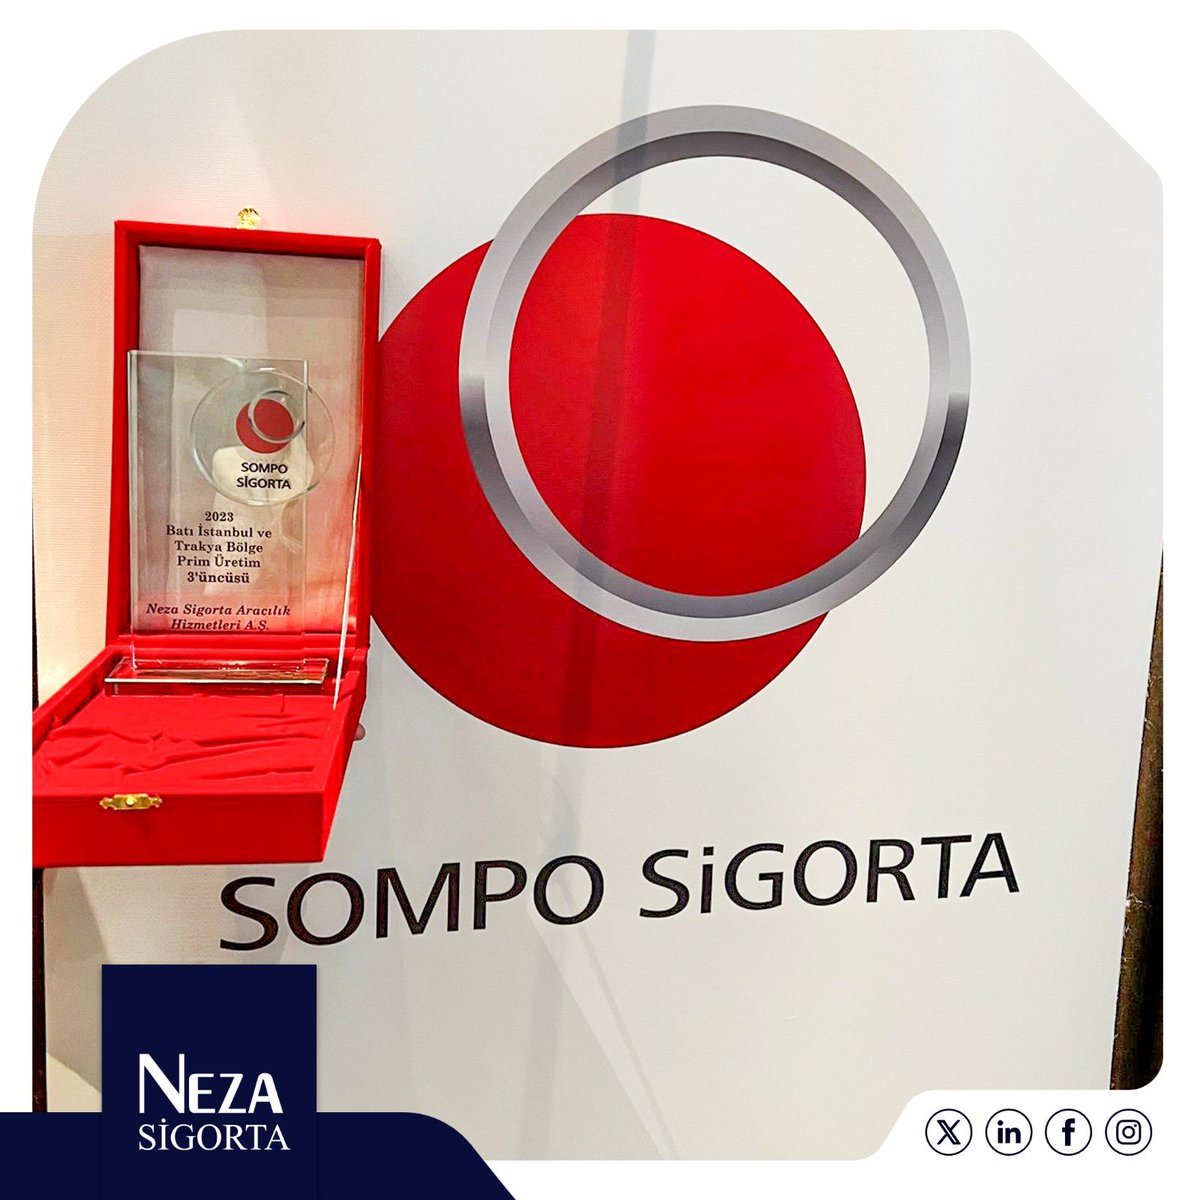 🏆🎉 Neza Sigorta Acentemiz, 2023'te Batı İstanbul ve Trakya Bölgesi'nde Prim Üretiminde üçüncülük ödülünü kazandı!

#NezaSigorta #SompoSigorta #GeleceğiniziSigortalıyoruz